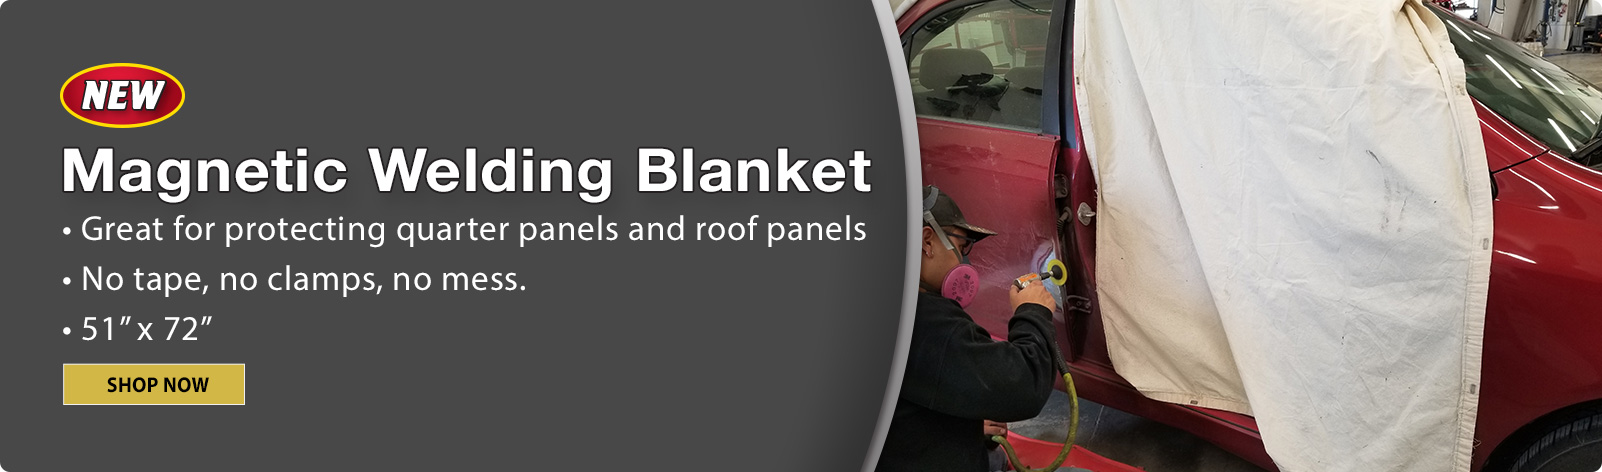 Magnetic Welding Blanket